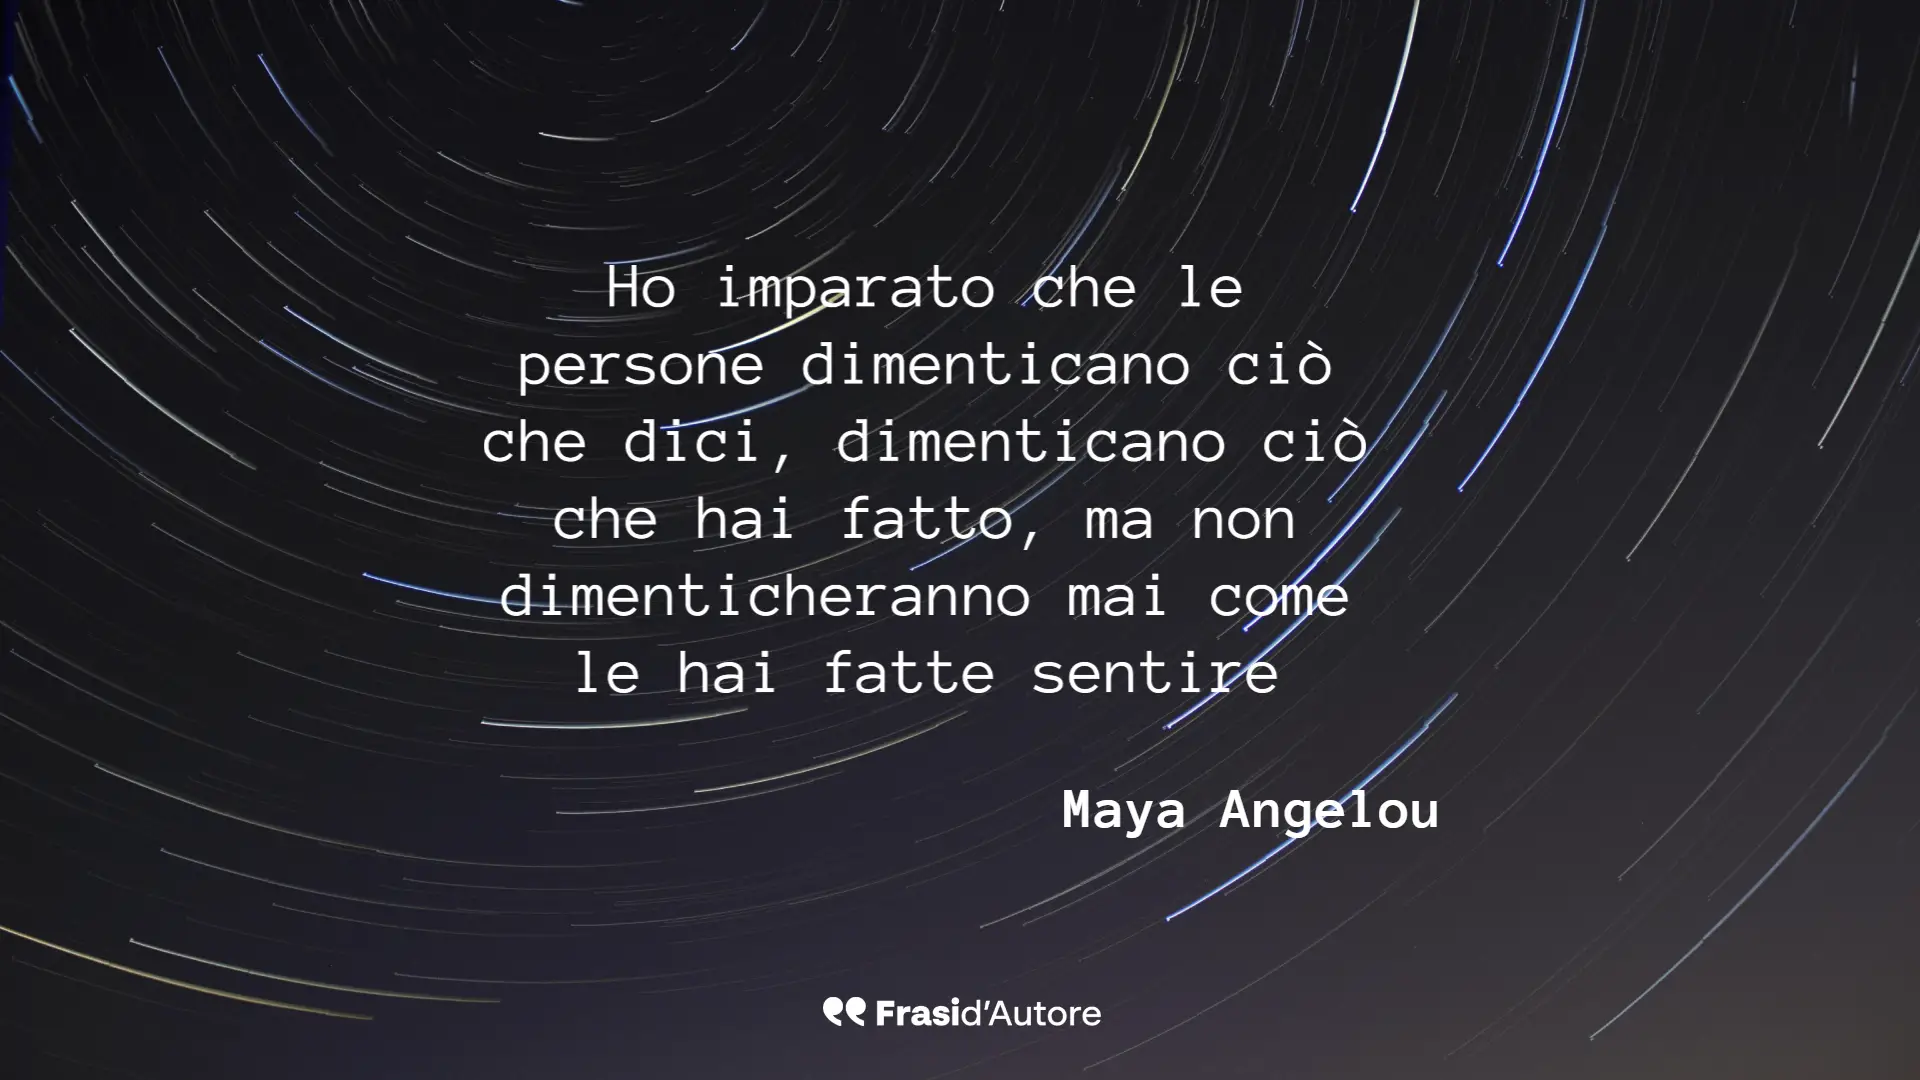 Maya Angelou: Ho imparato che le person…